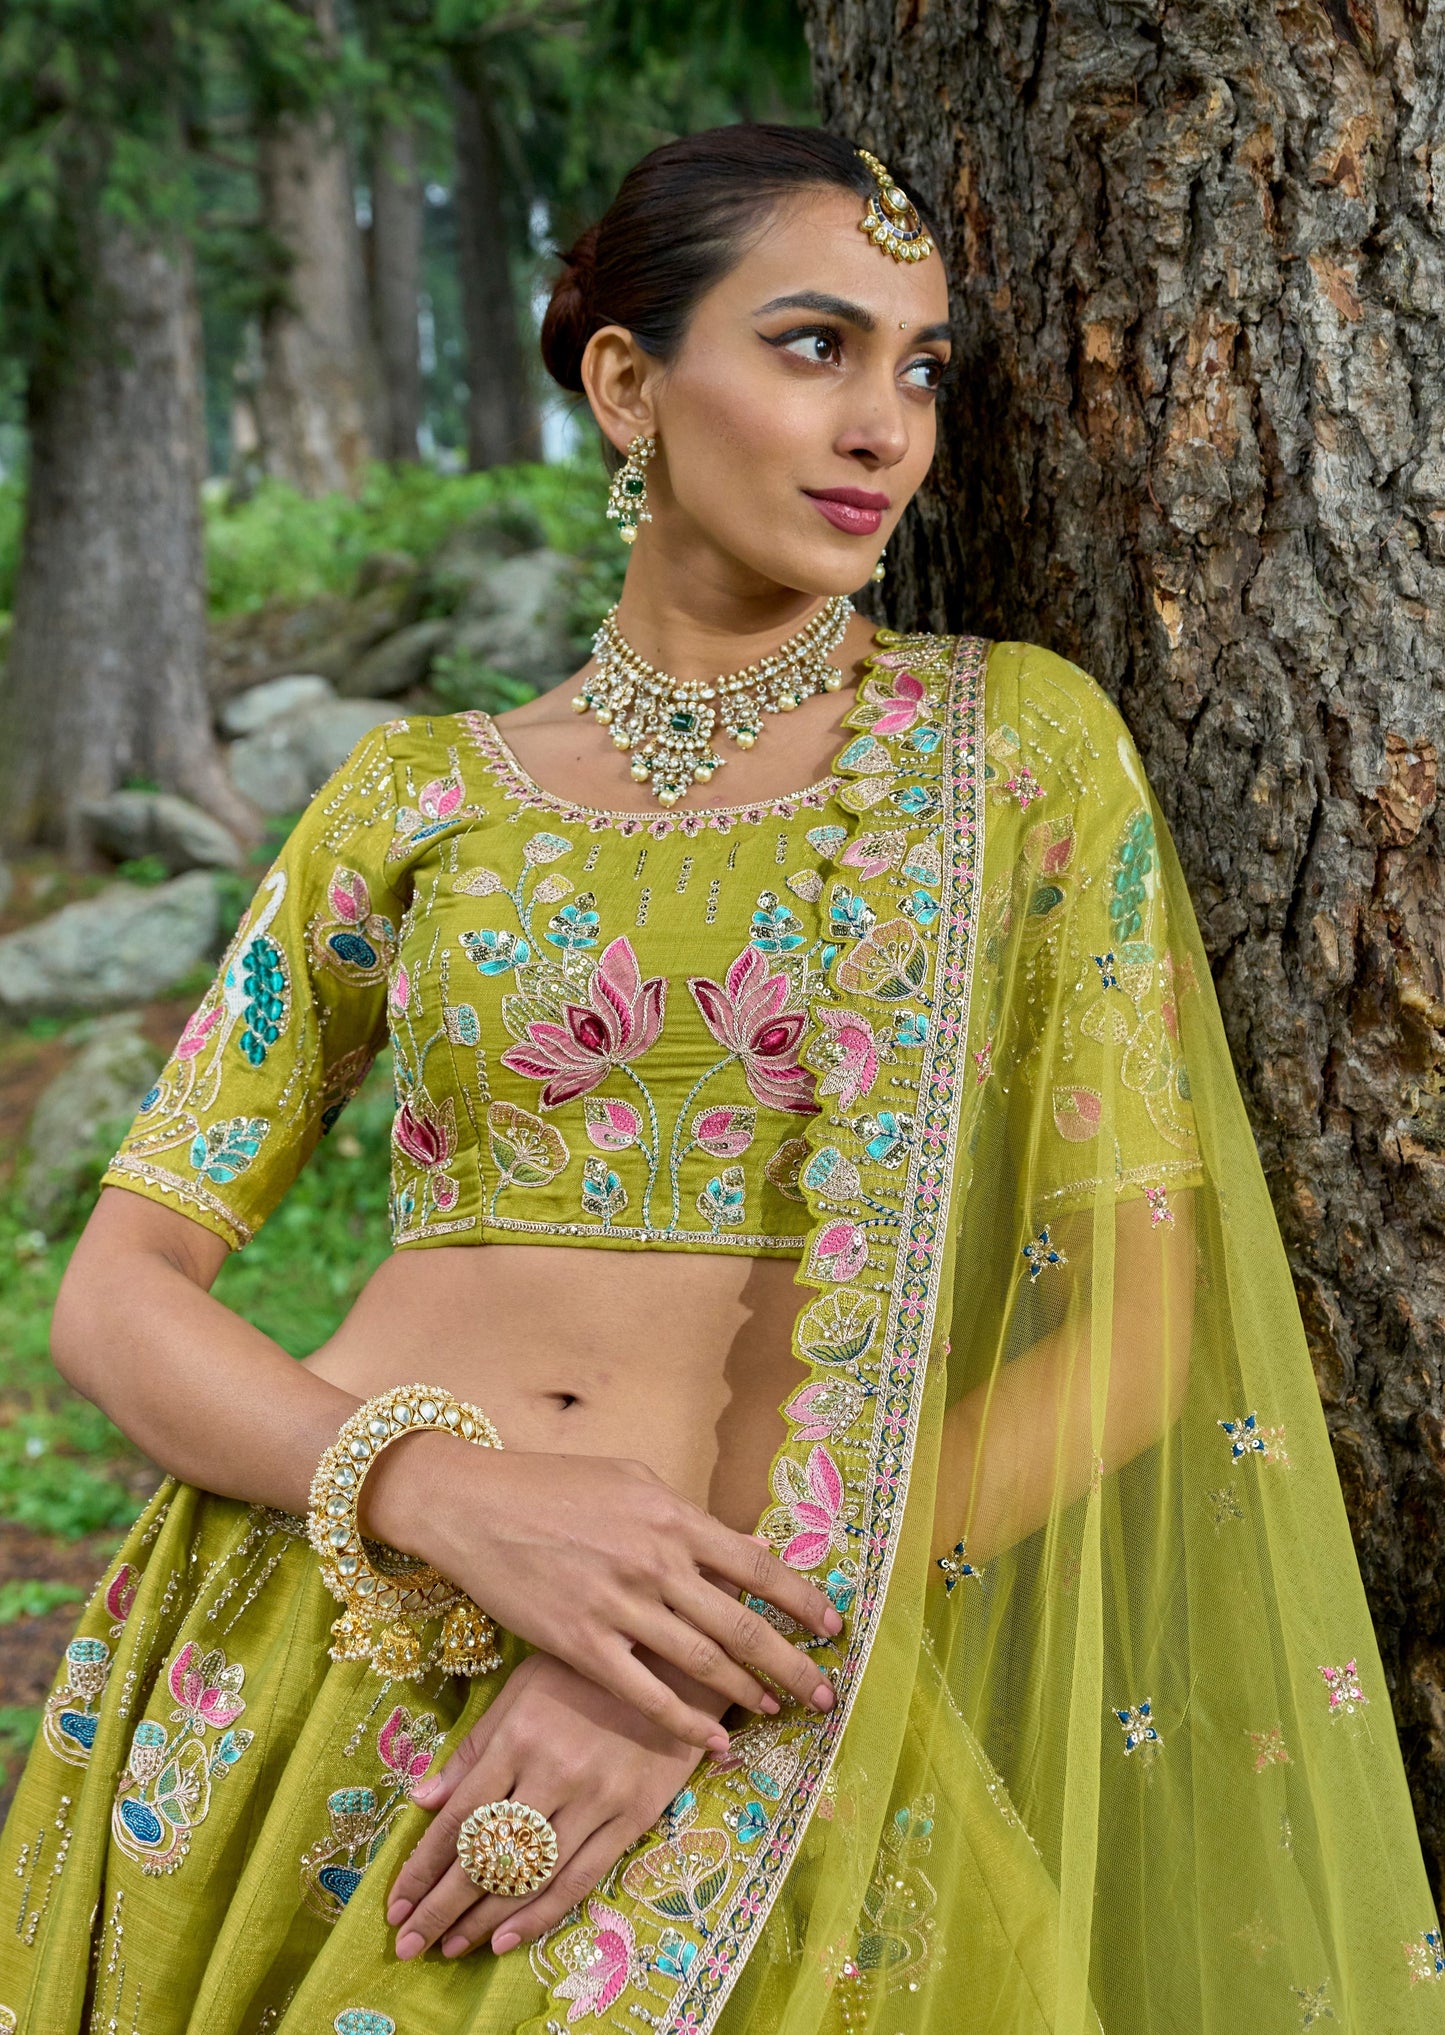 Designer bridal luxury green lehenga choli online usa uk london uae dubai for wedding.